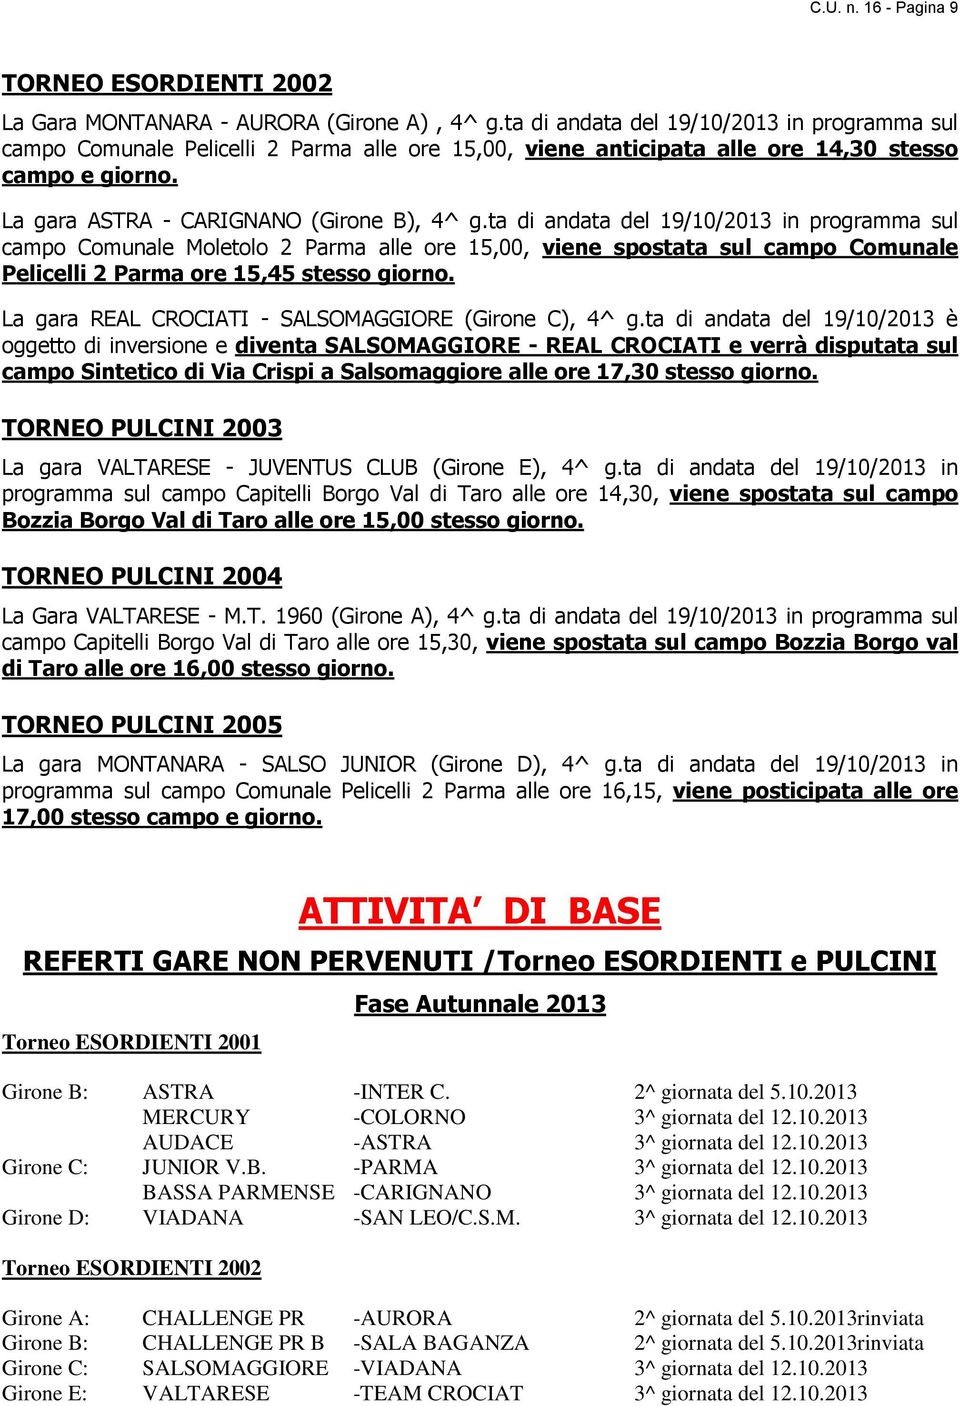 ta di andata del 19/10/2013 in programma sul campo Comunale Moletolo 2 Parma alle ore 15,00, viene spostata sul campo Comunale Pelicelli 2 Parma ore 15,45 stesso giorno.